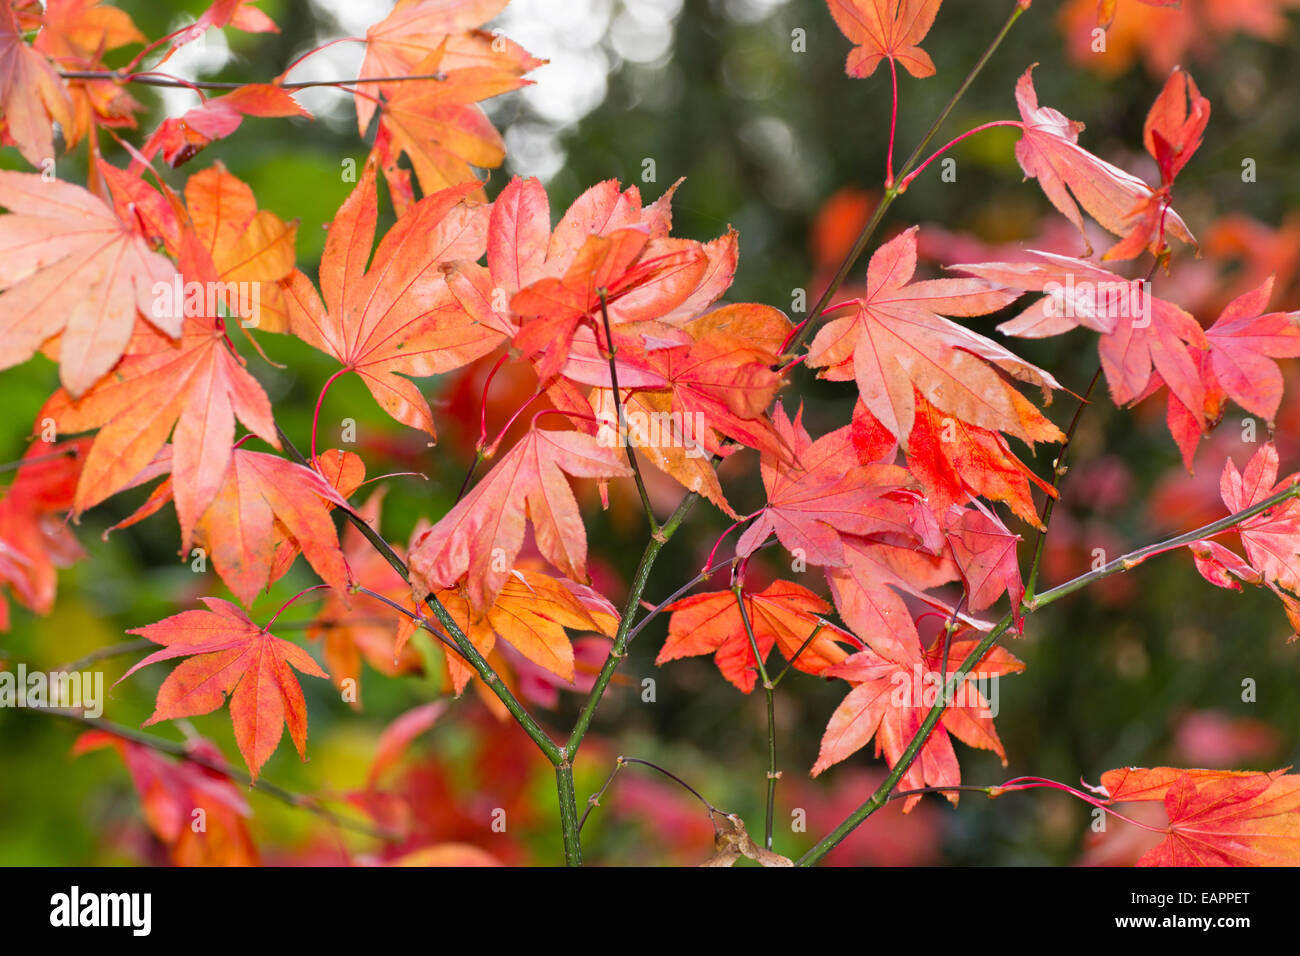 Red orange autumn foliage of the Japanese maple, Acer palmatum Stock Photo